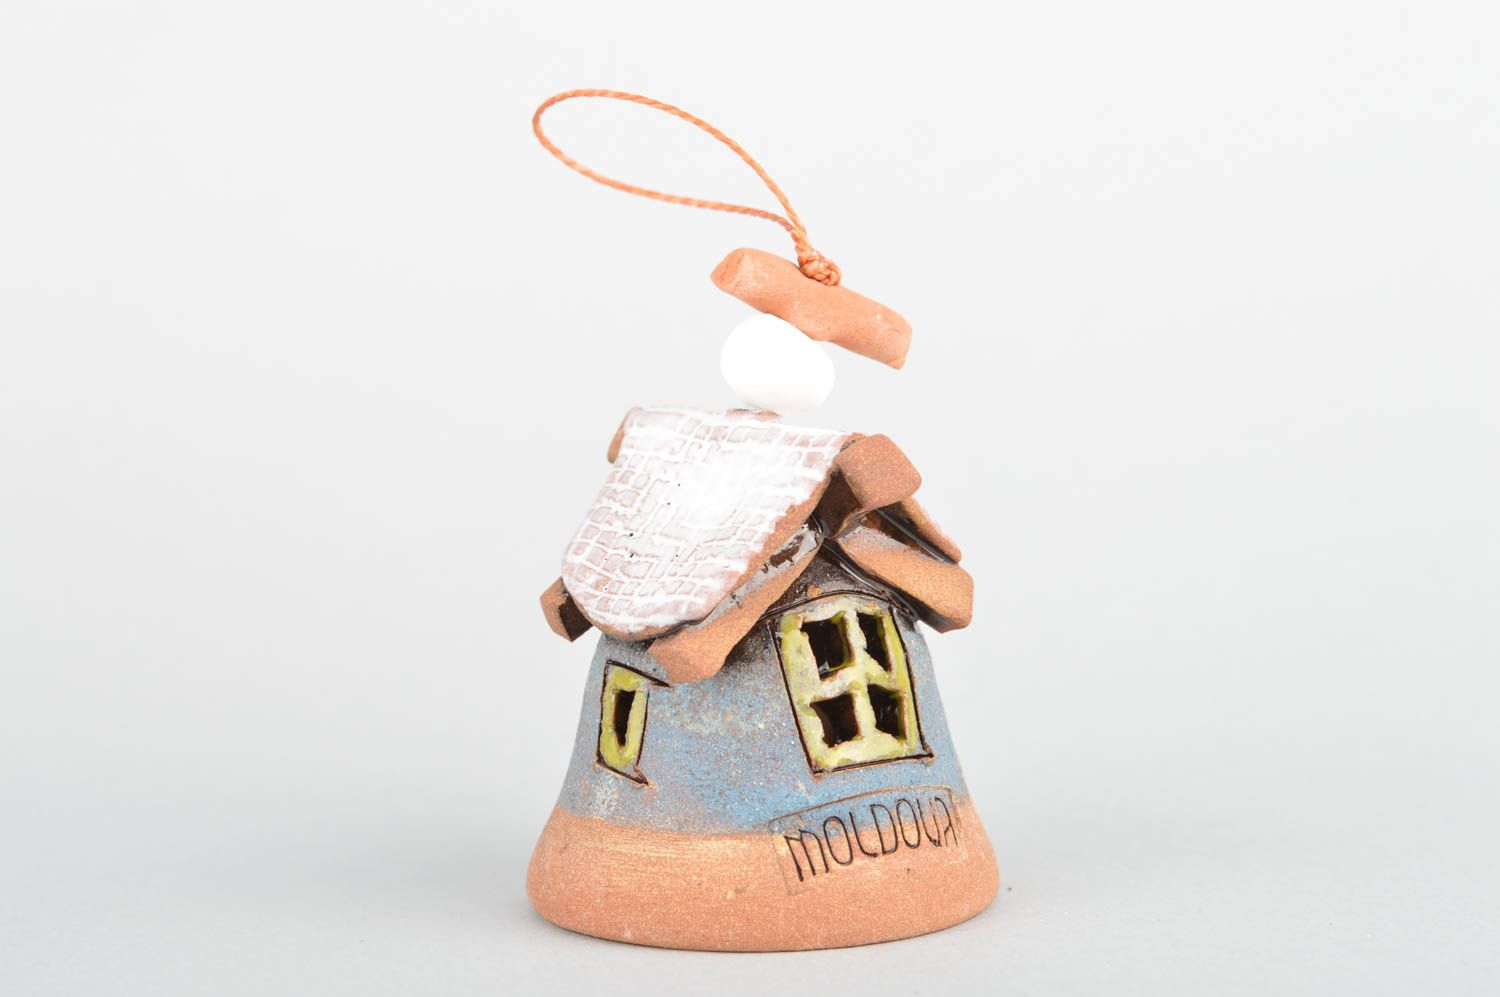 Глиняный колокольчик расписанный глазурью хэнд мэйд в виде домика с белой крышей фото 2